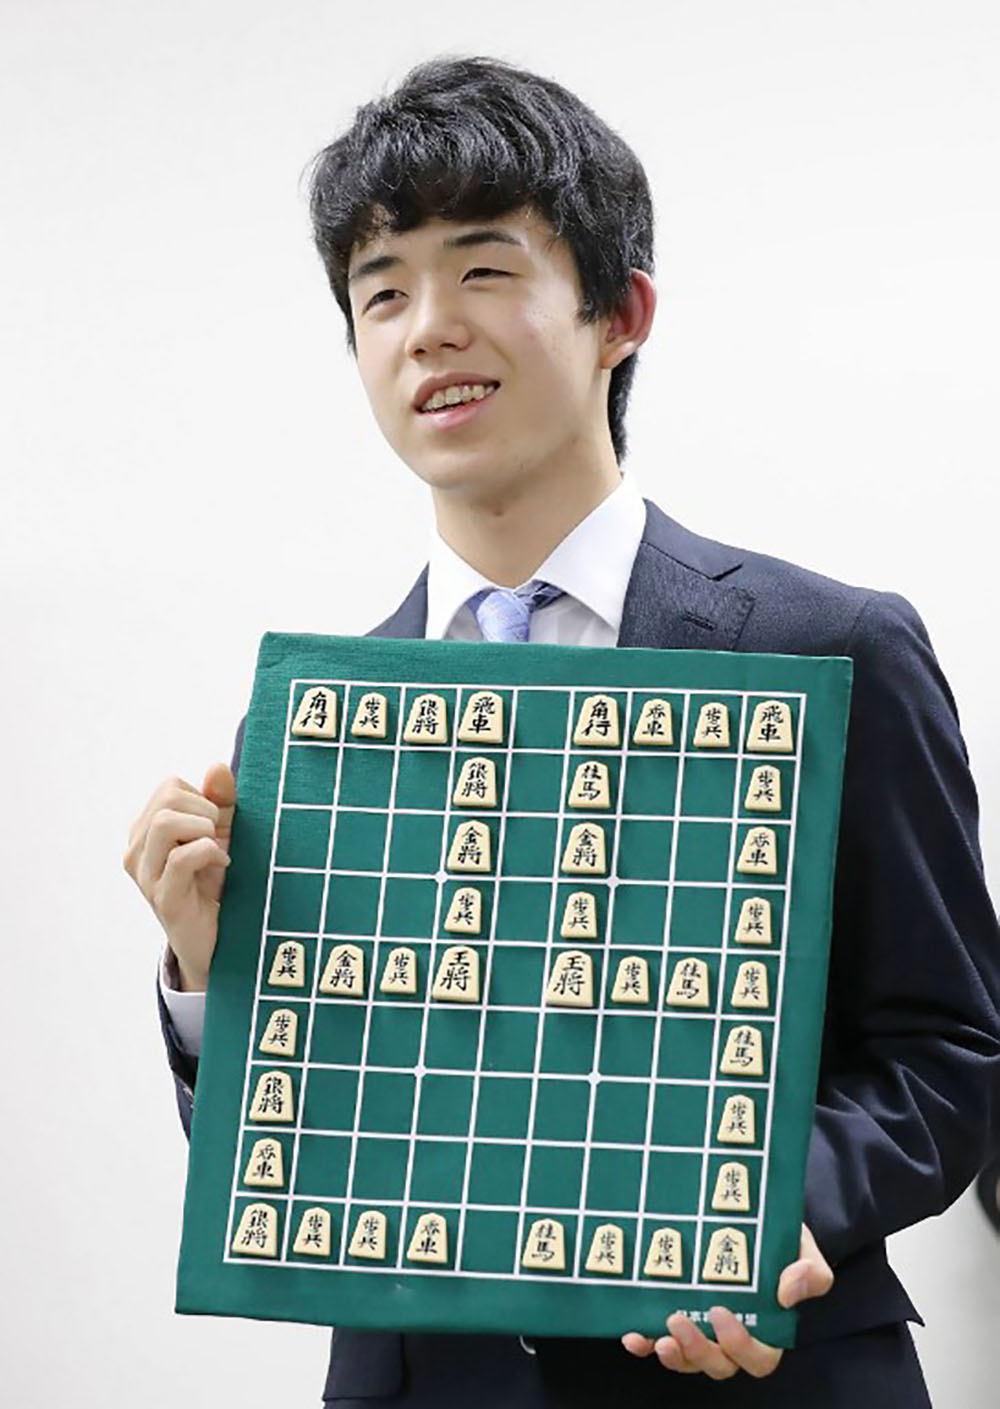 Japon: un jeune prodige des échecs nippons épate l'archipel